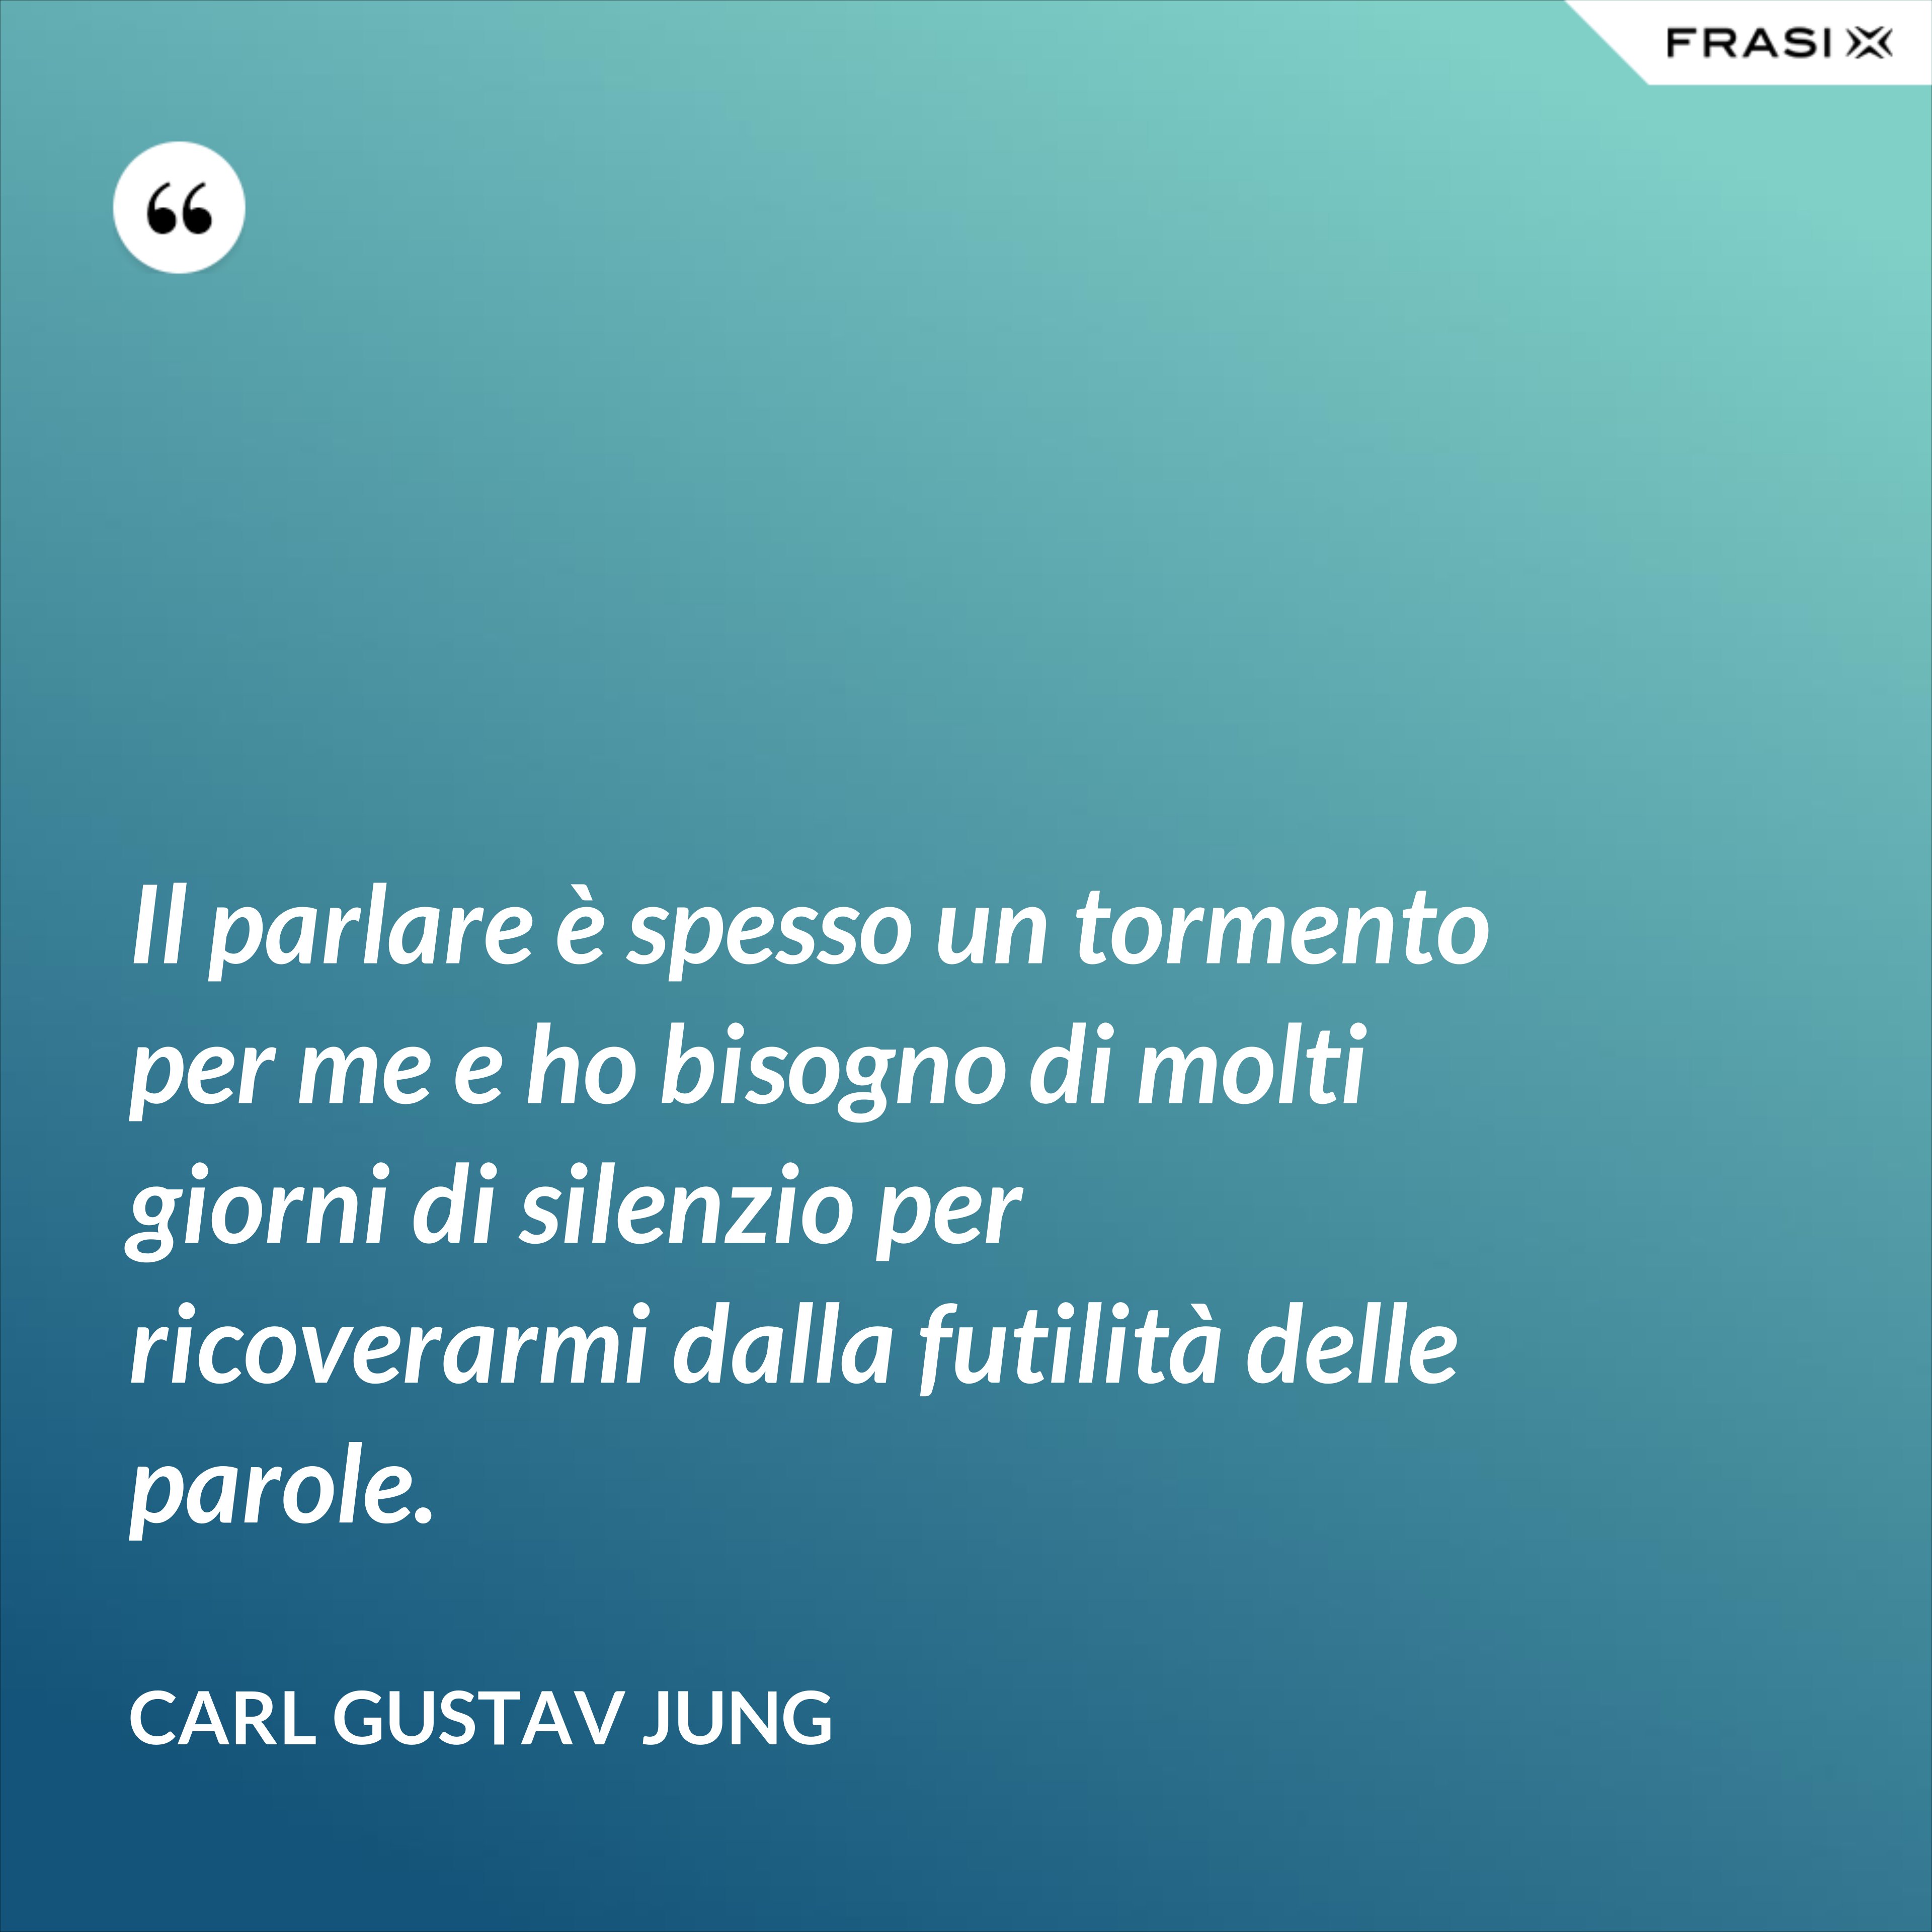 Il parlare è spesso un tormento per me e ho bisogno di molti giorni di silenzio per ricoverarmi dalla futilità delle parole. - Carl Gustav Jung